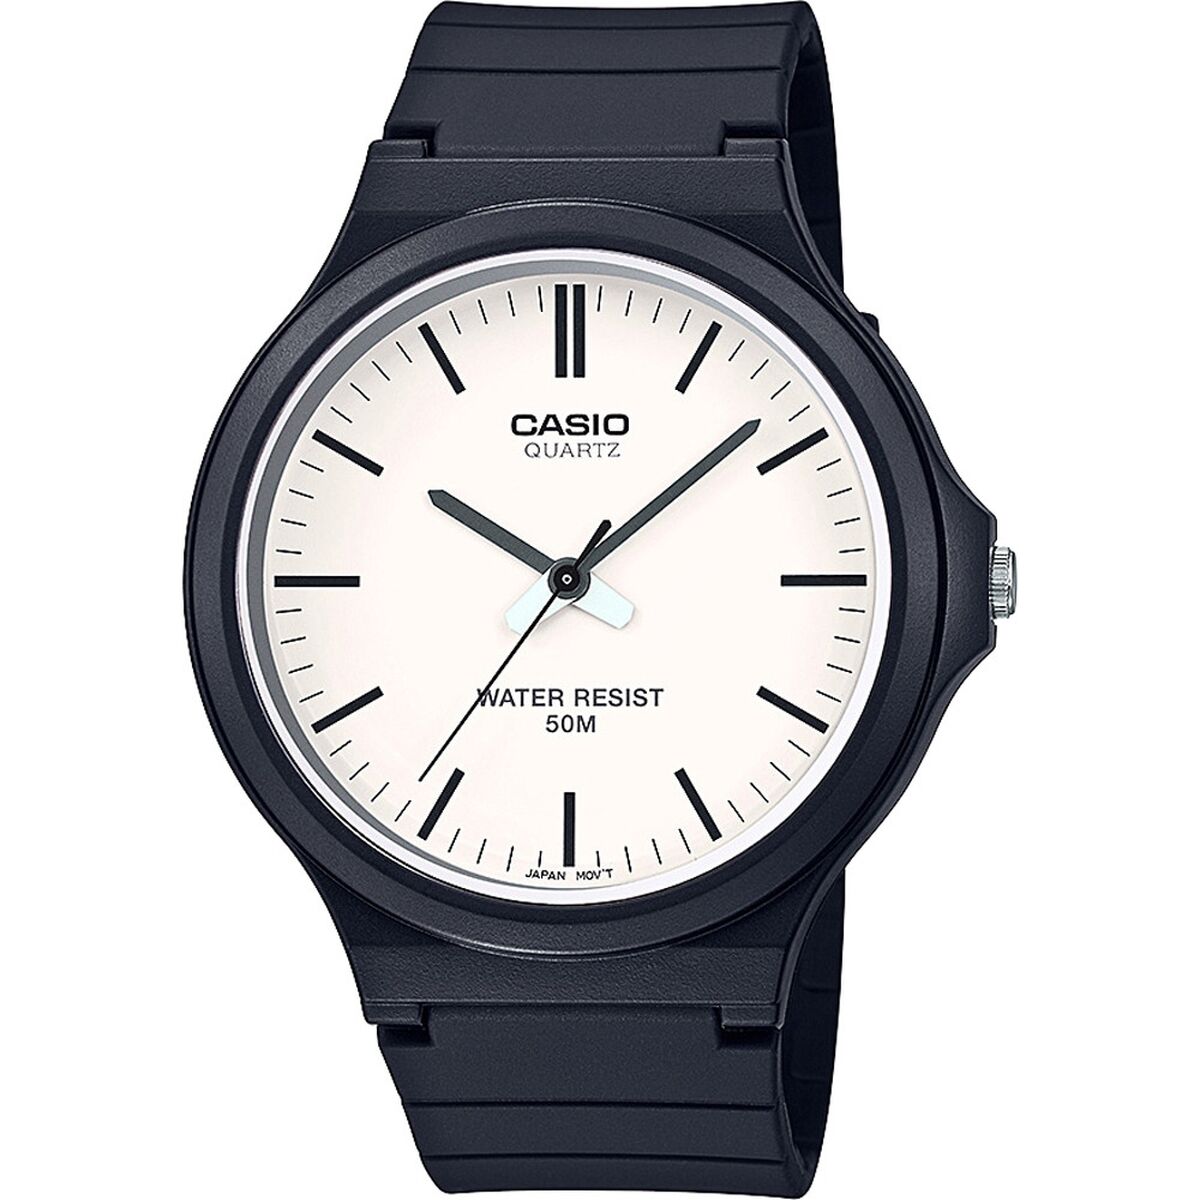 Kaufe Unisex-Uhr Casio COLLECTION Schwarz (Ø 34 mm) bei AWK Flagship um € 57.00